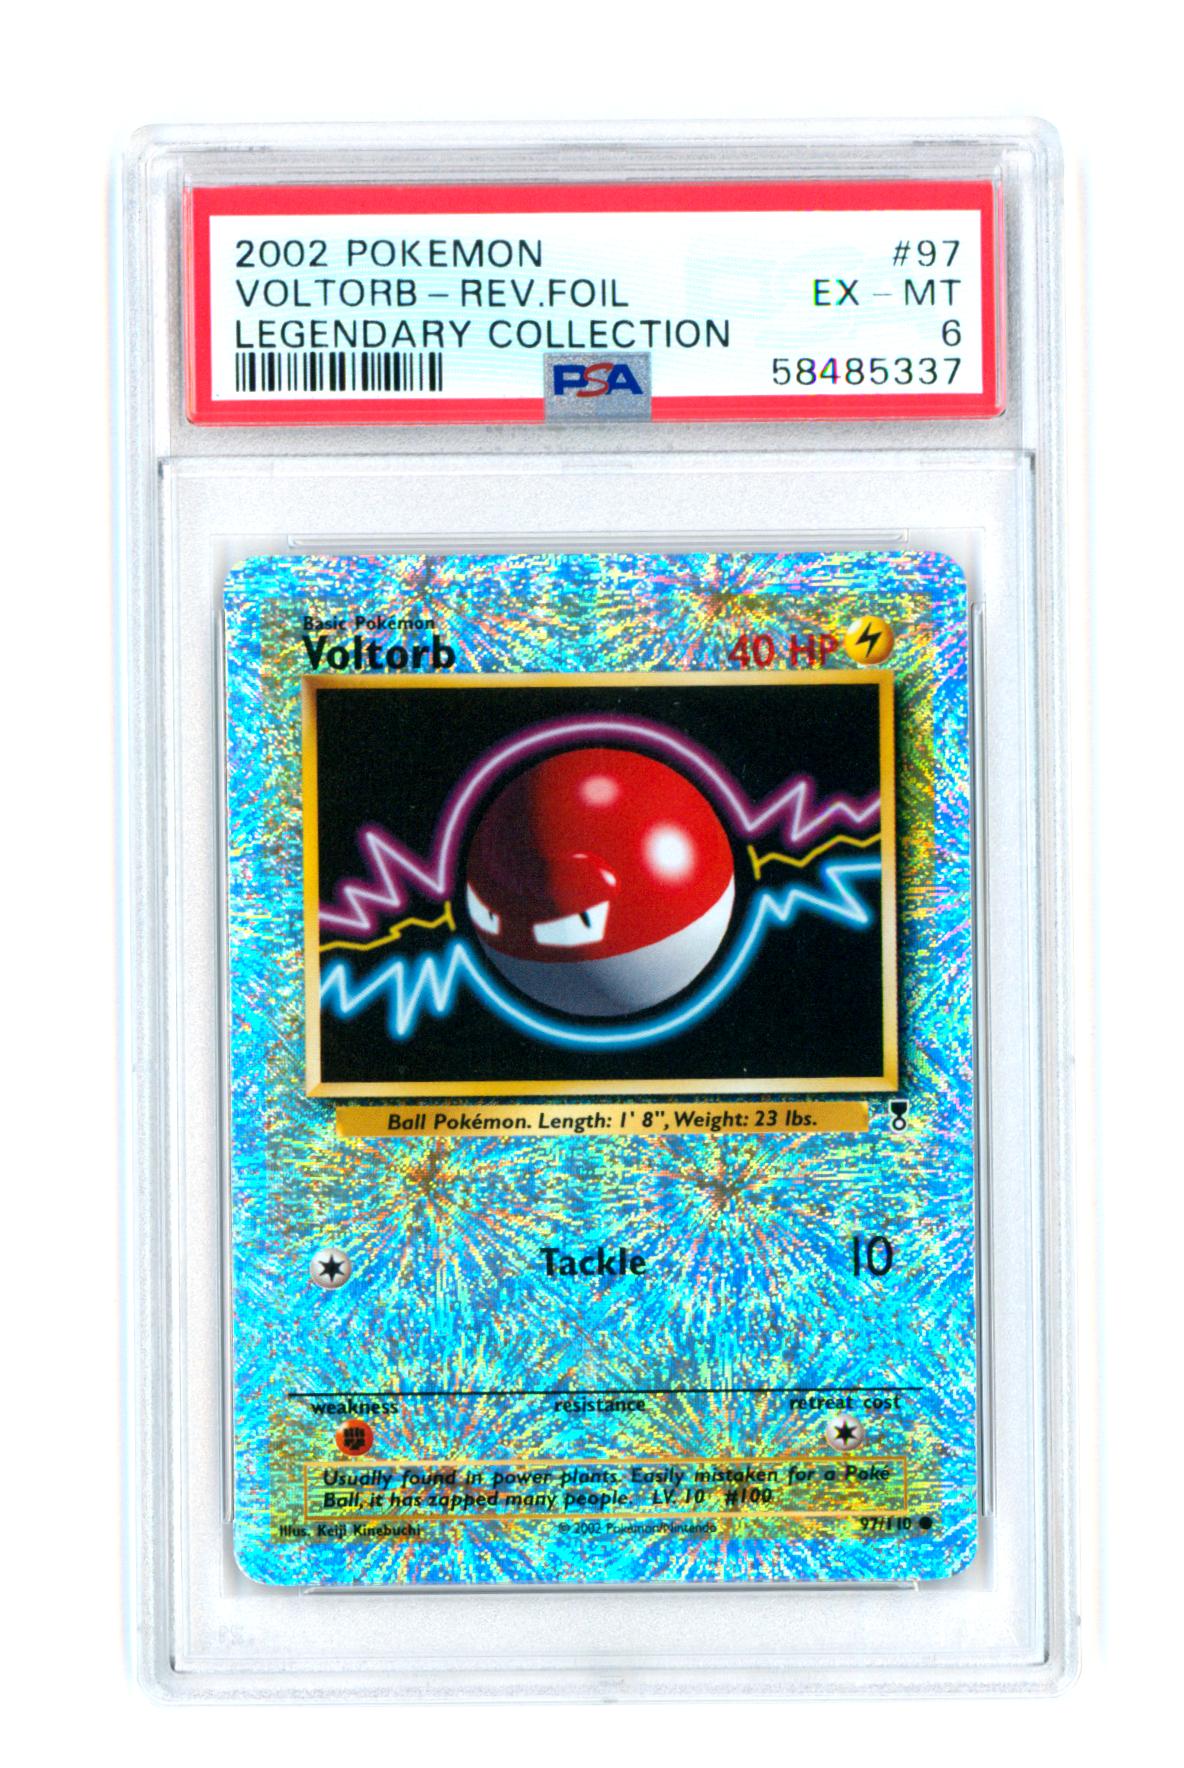 Voltorb 97/110 - Legendary Collection - Reverse Holo - PSA 6 EX-MT - Pokémon